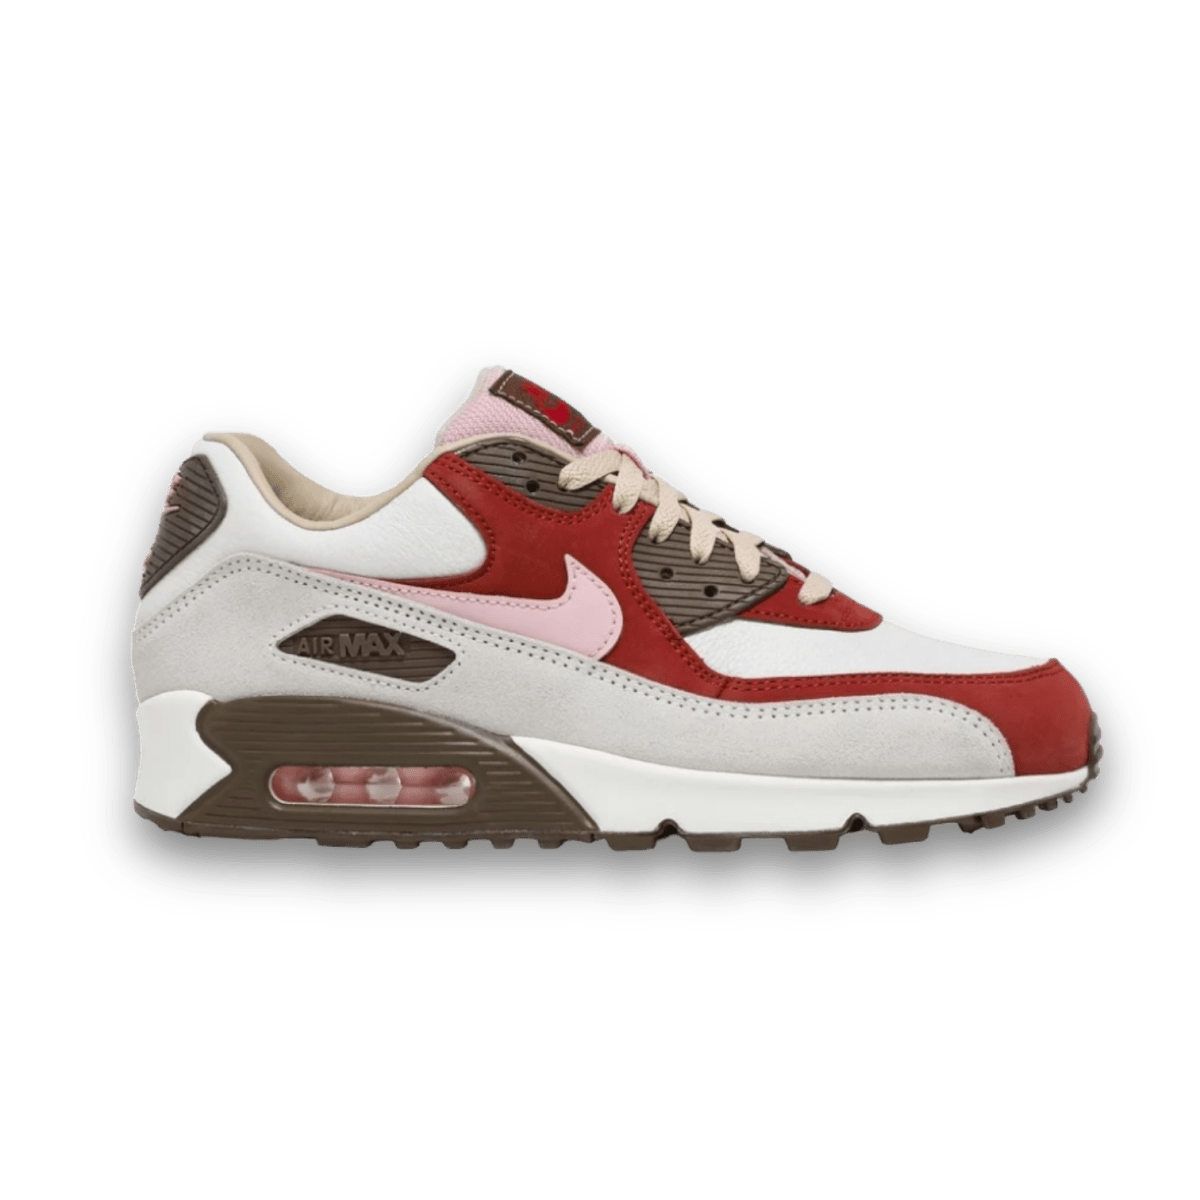 Air Max 90 'Bacon' 2021 - Low Sneaker - Jawns on Fire Sneakers & Streetwear